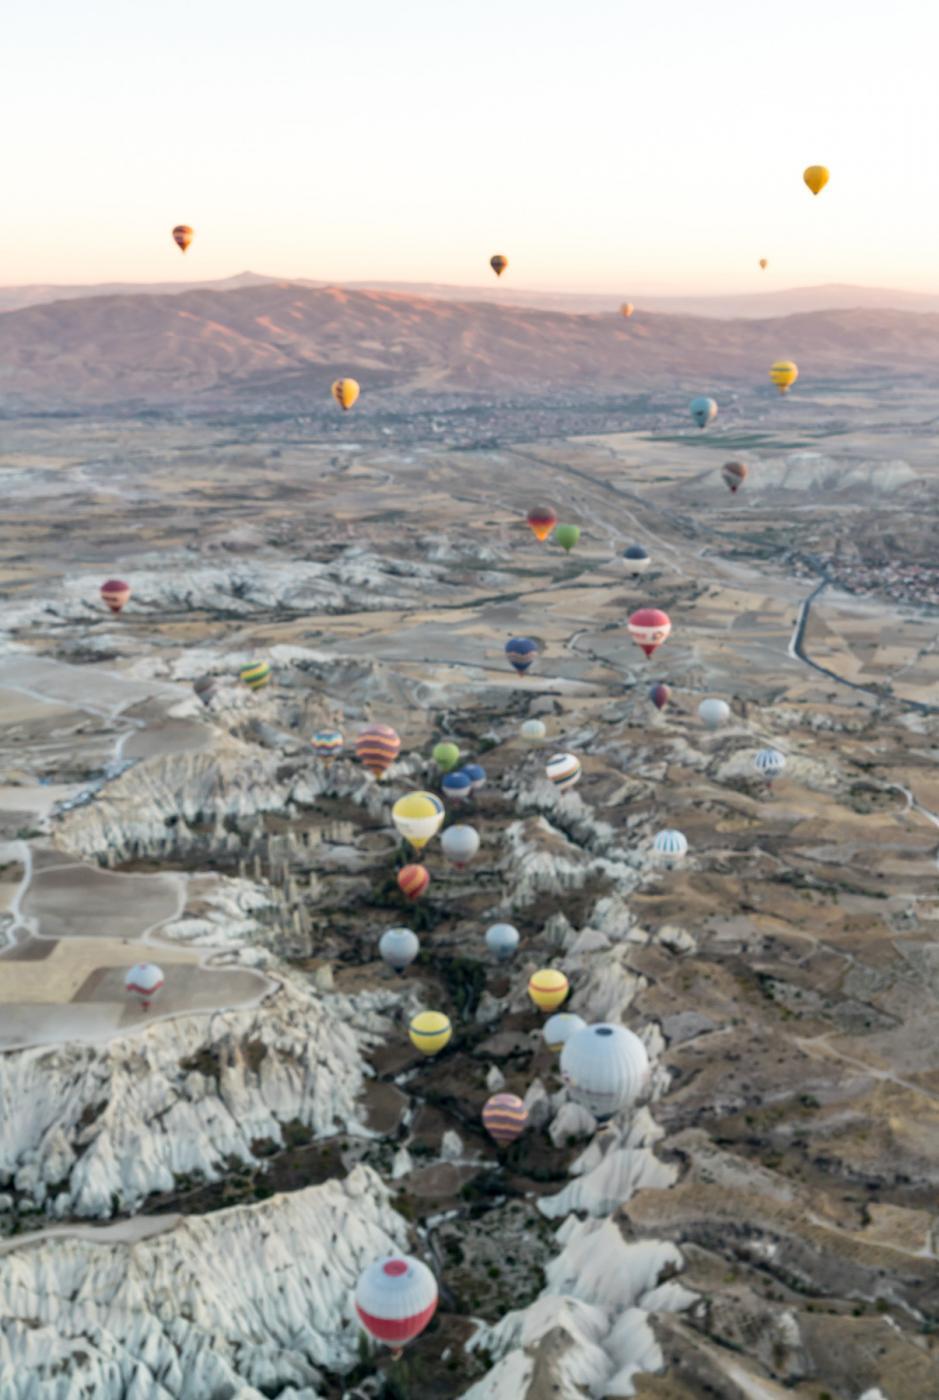 Balloons in Cappadocia as seen from above